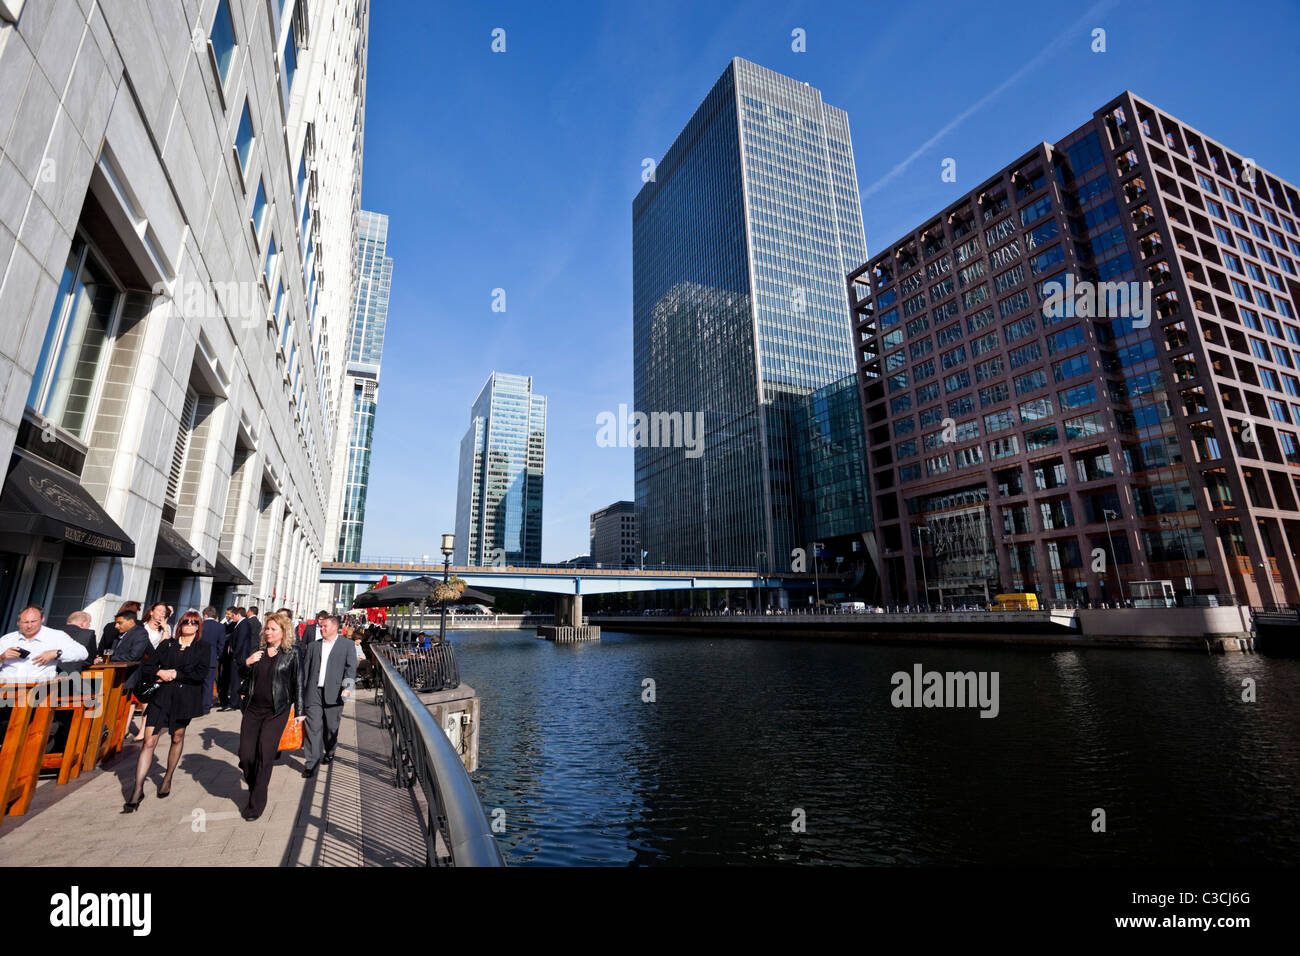 Stadtbild von der mittleren Dock in Canary Wharf, London, England, UK Stockfoto